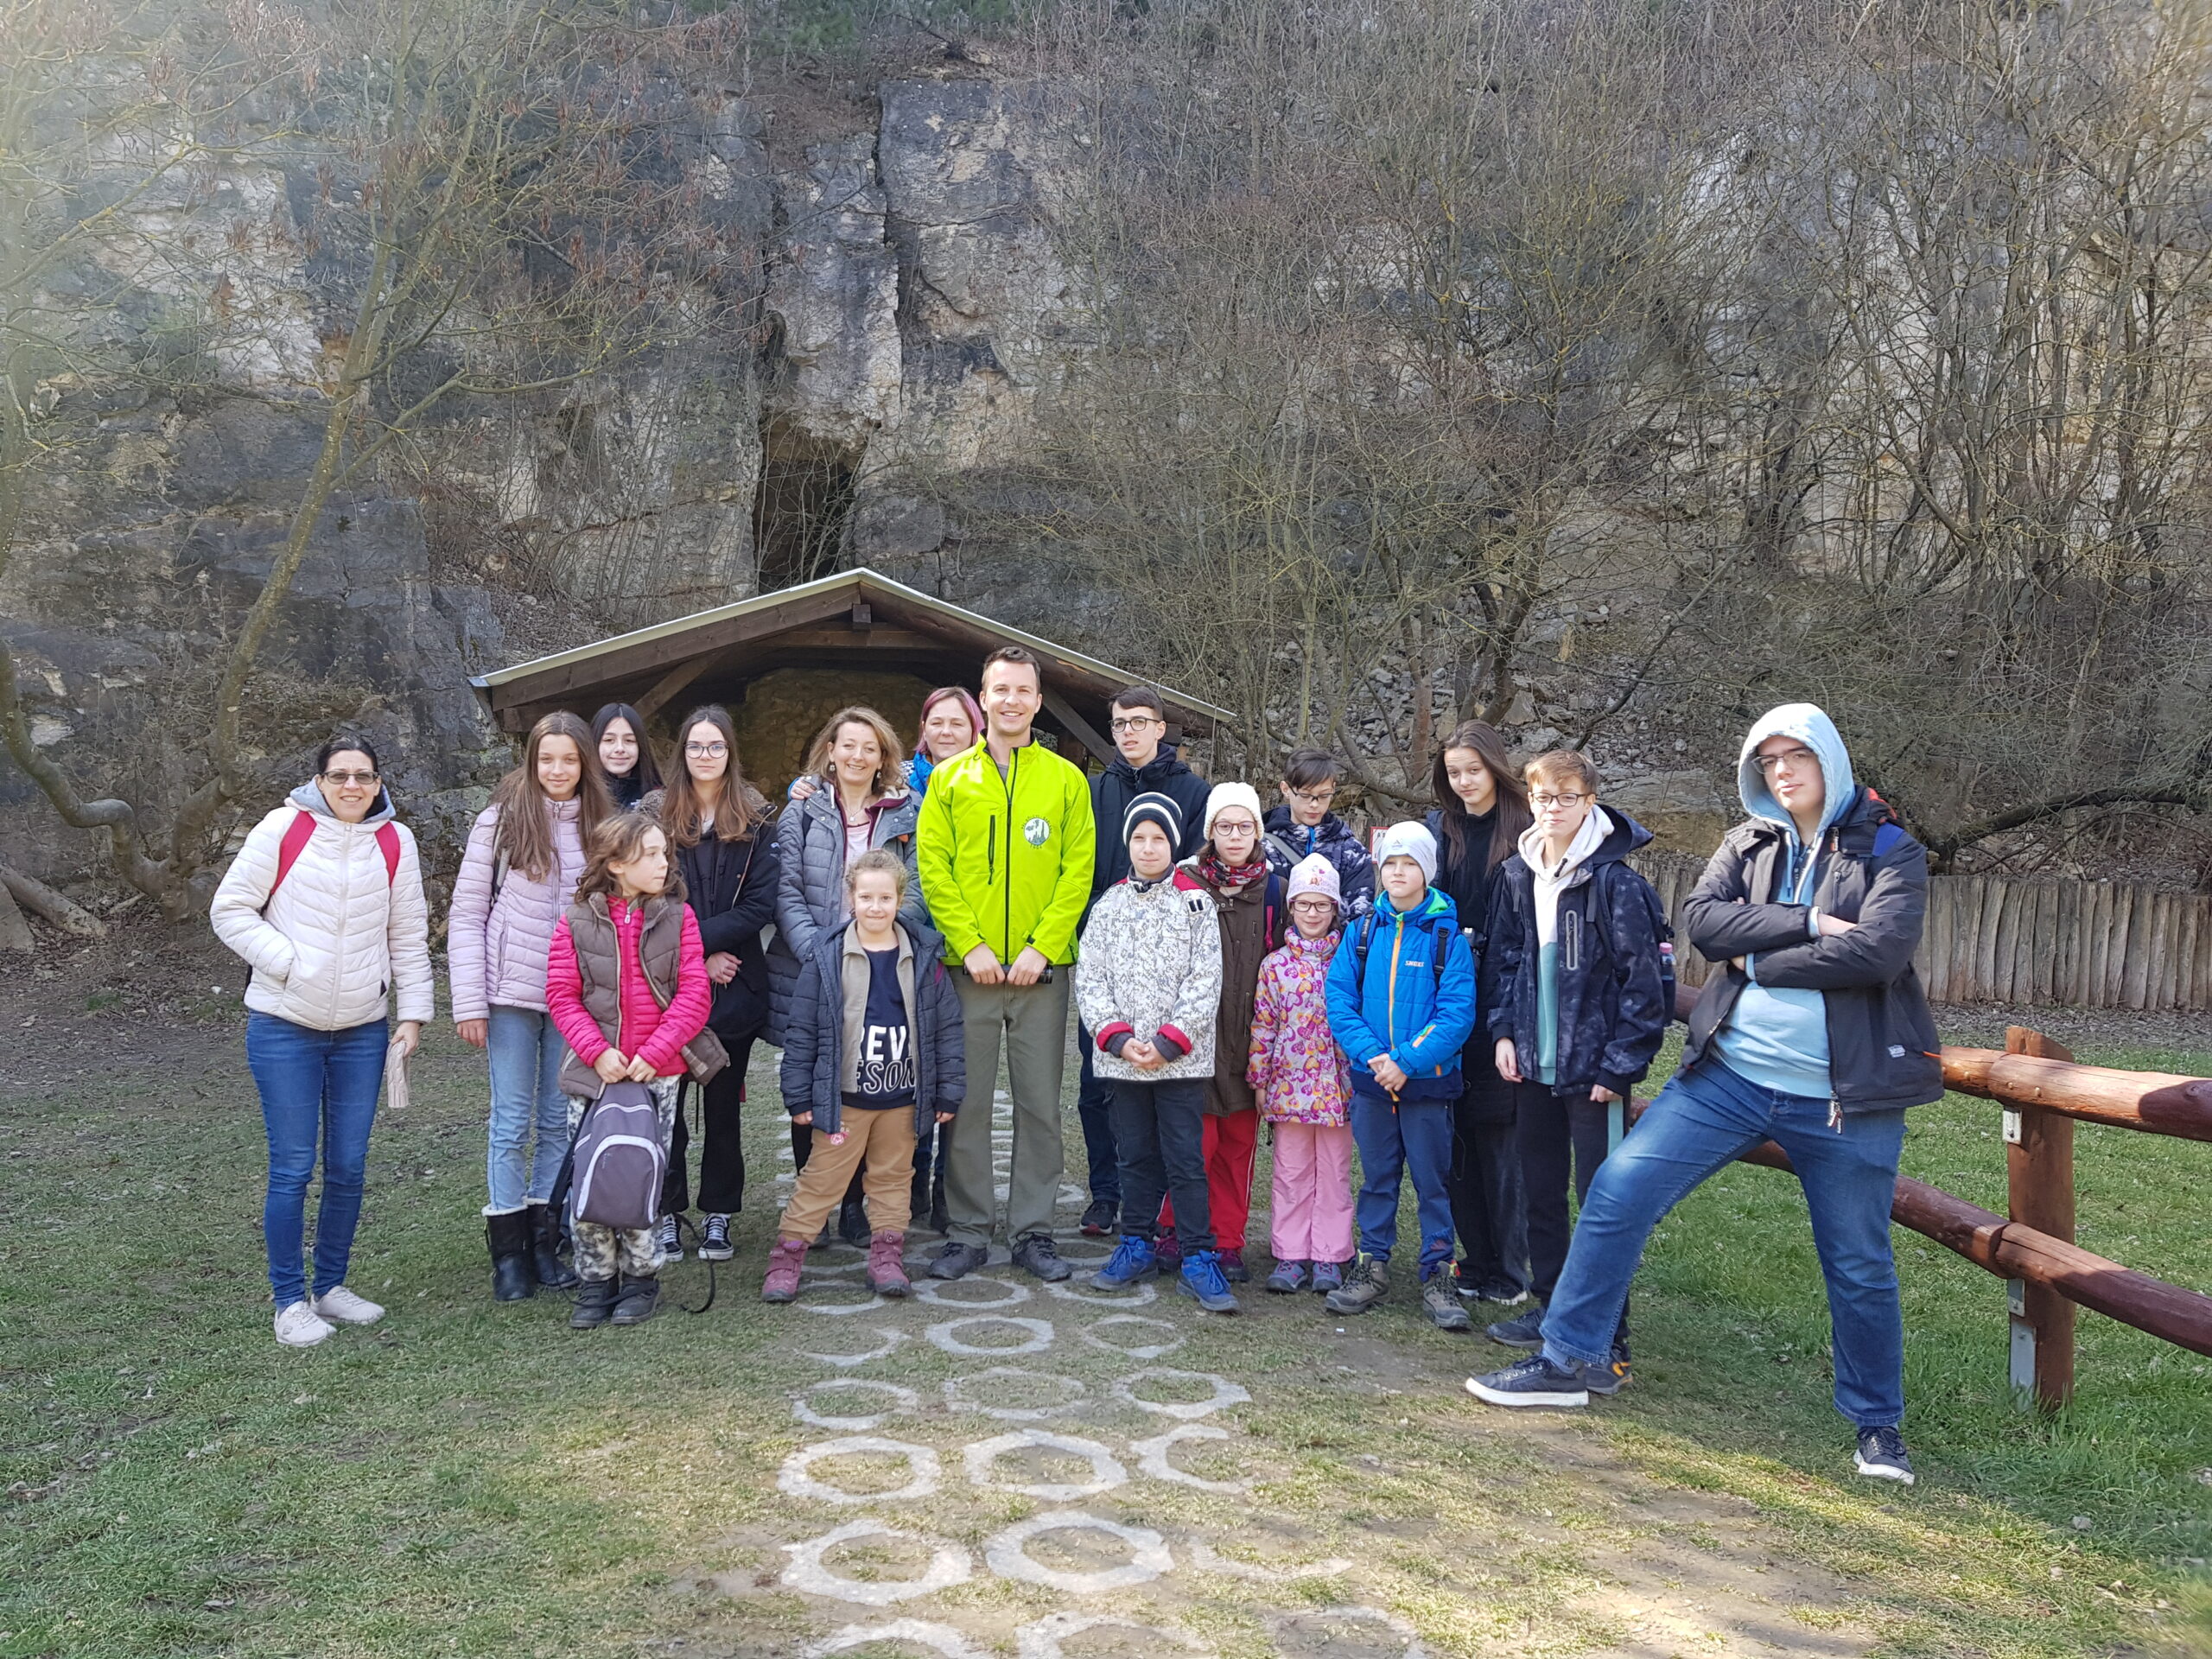 Budai hegység egyik legszebb barlangja a Pál-völgyi barlang, sok cseppkővel és denevérrel!